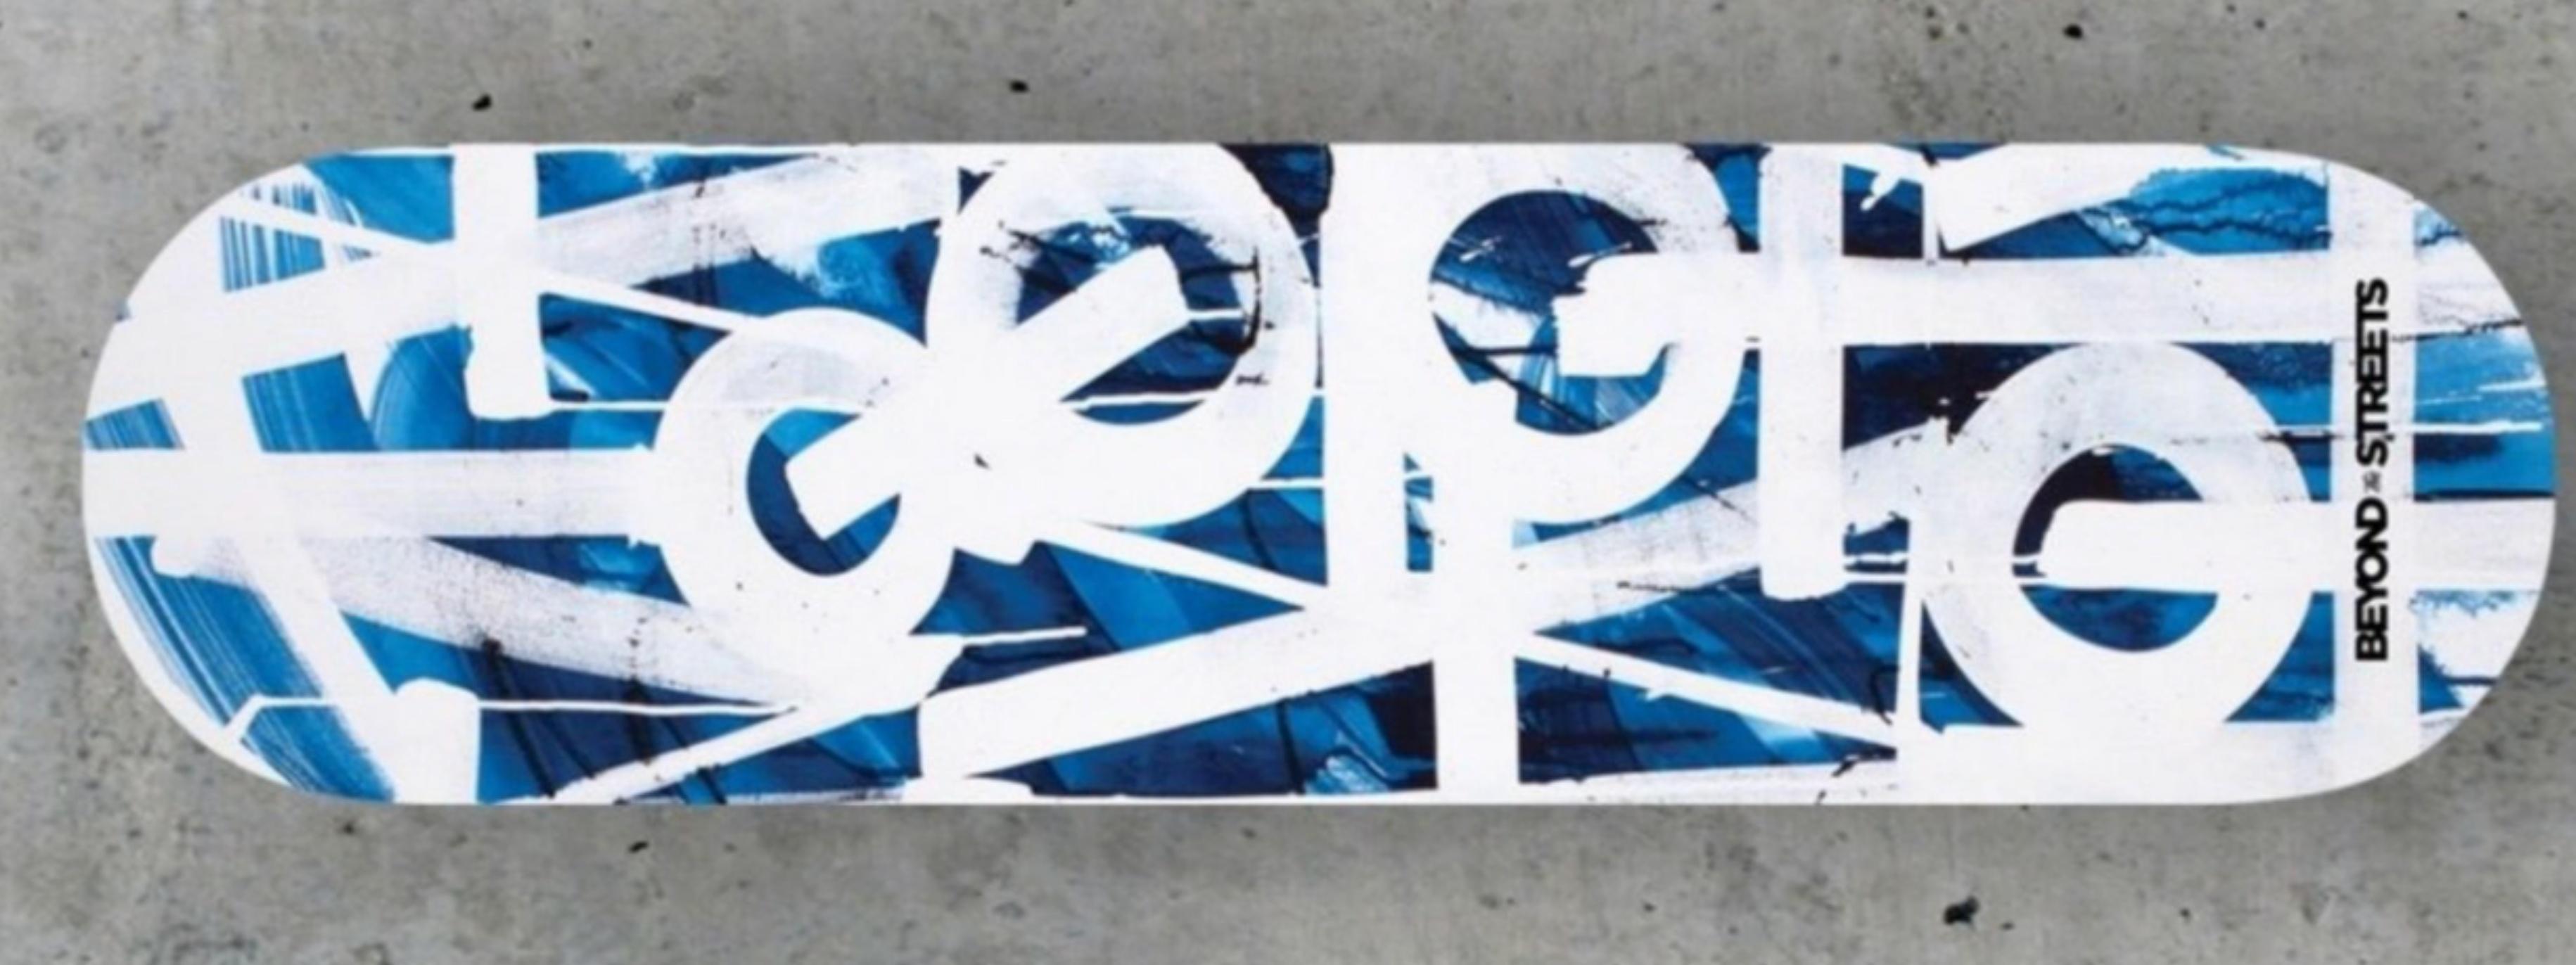 RETNA
Planche à roulettes Skateboard (Bleu avec dos en bois) avec COA signé par RETNA, 2018
Sérigraphie sur le skate deck de Maplewood. Accompagné d'un certificat d'authenticité signé à la main sur papier à en-tête gaufré.
Édition limitée à 100